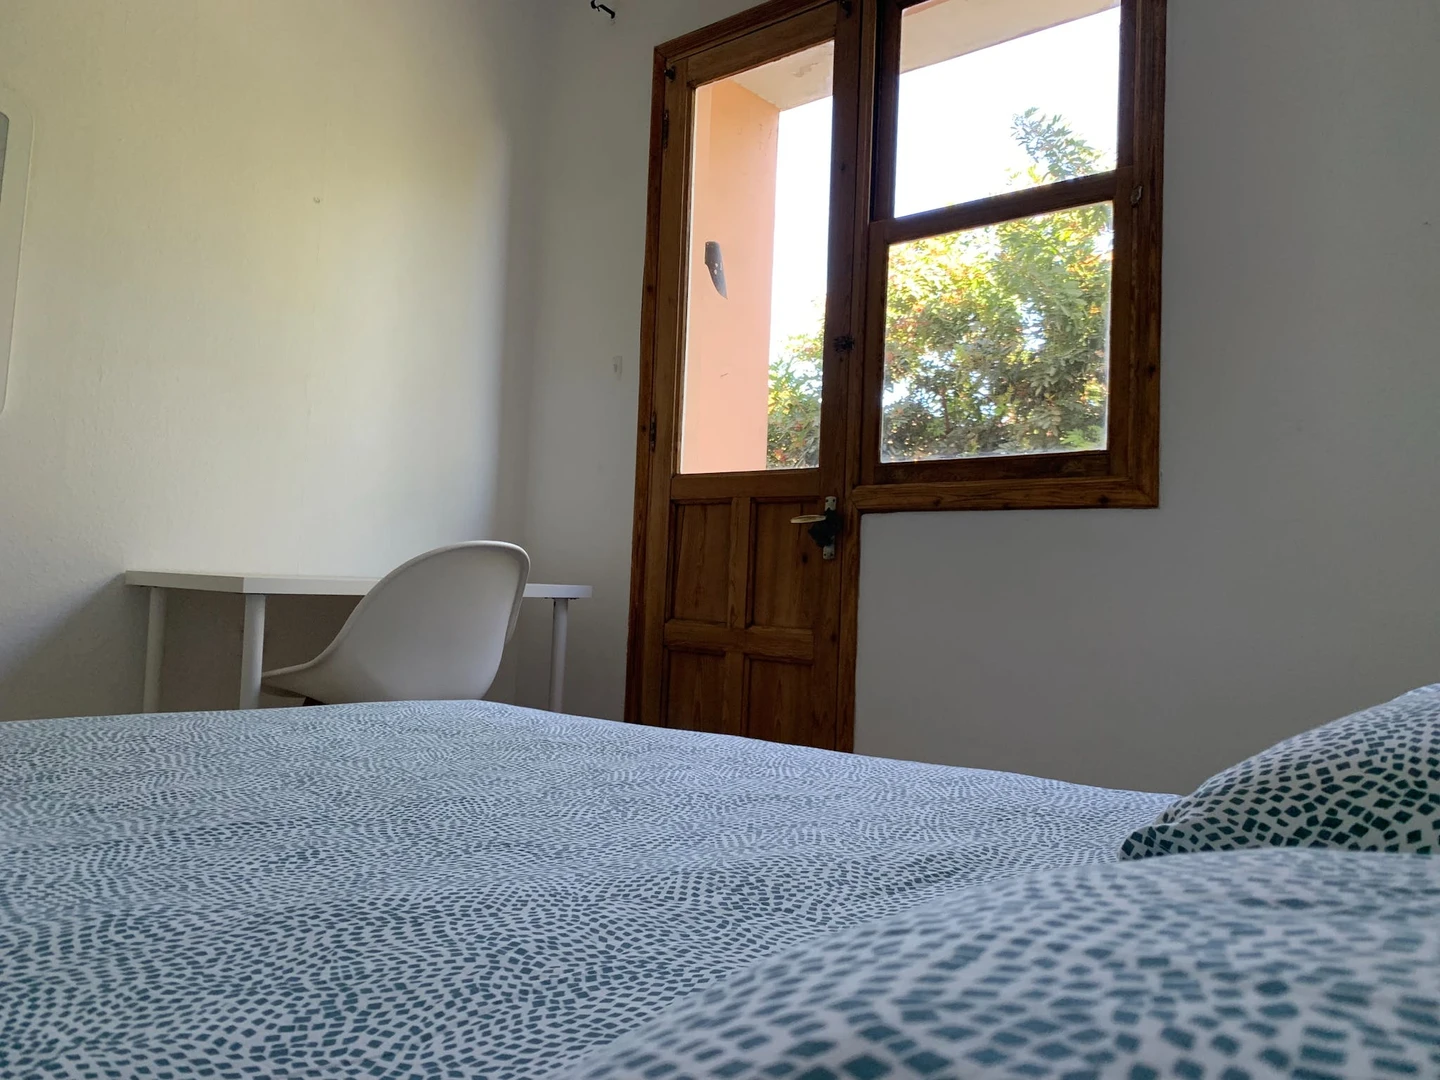 Santa Cruz De Tenerife de ucuz özel oda